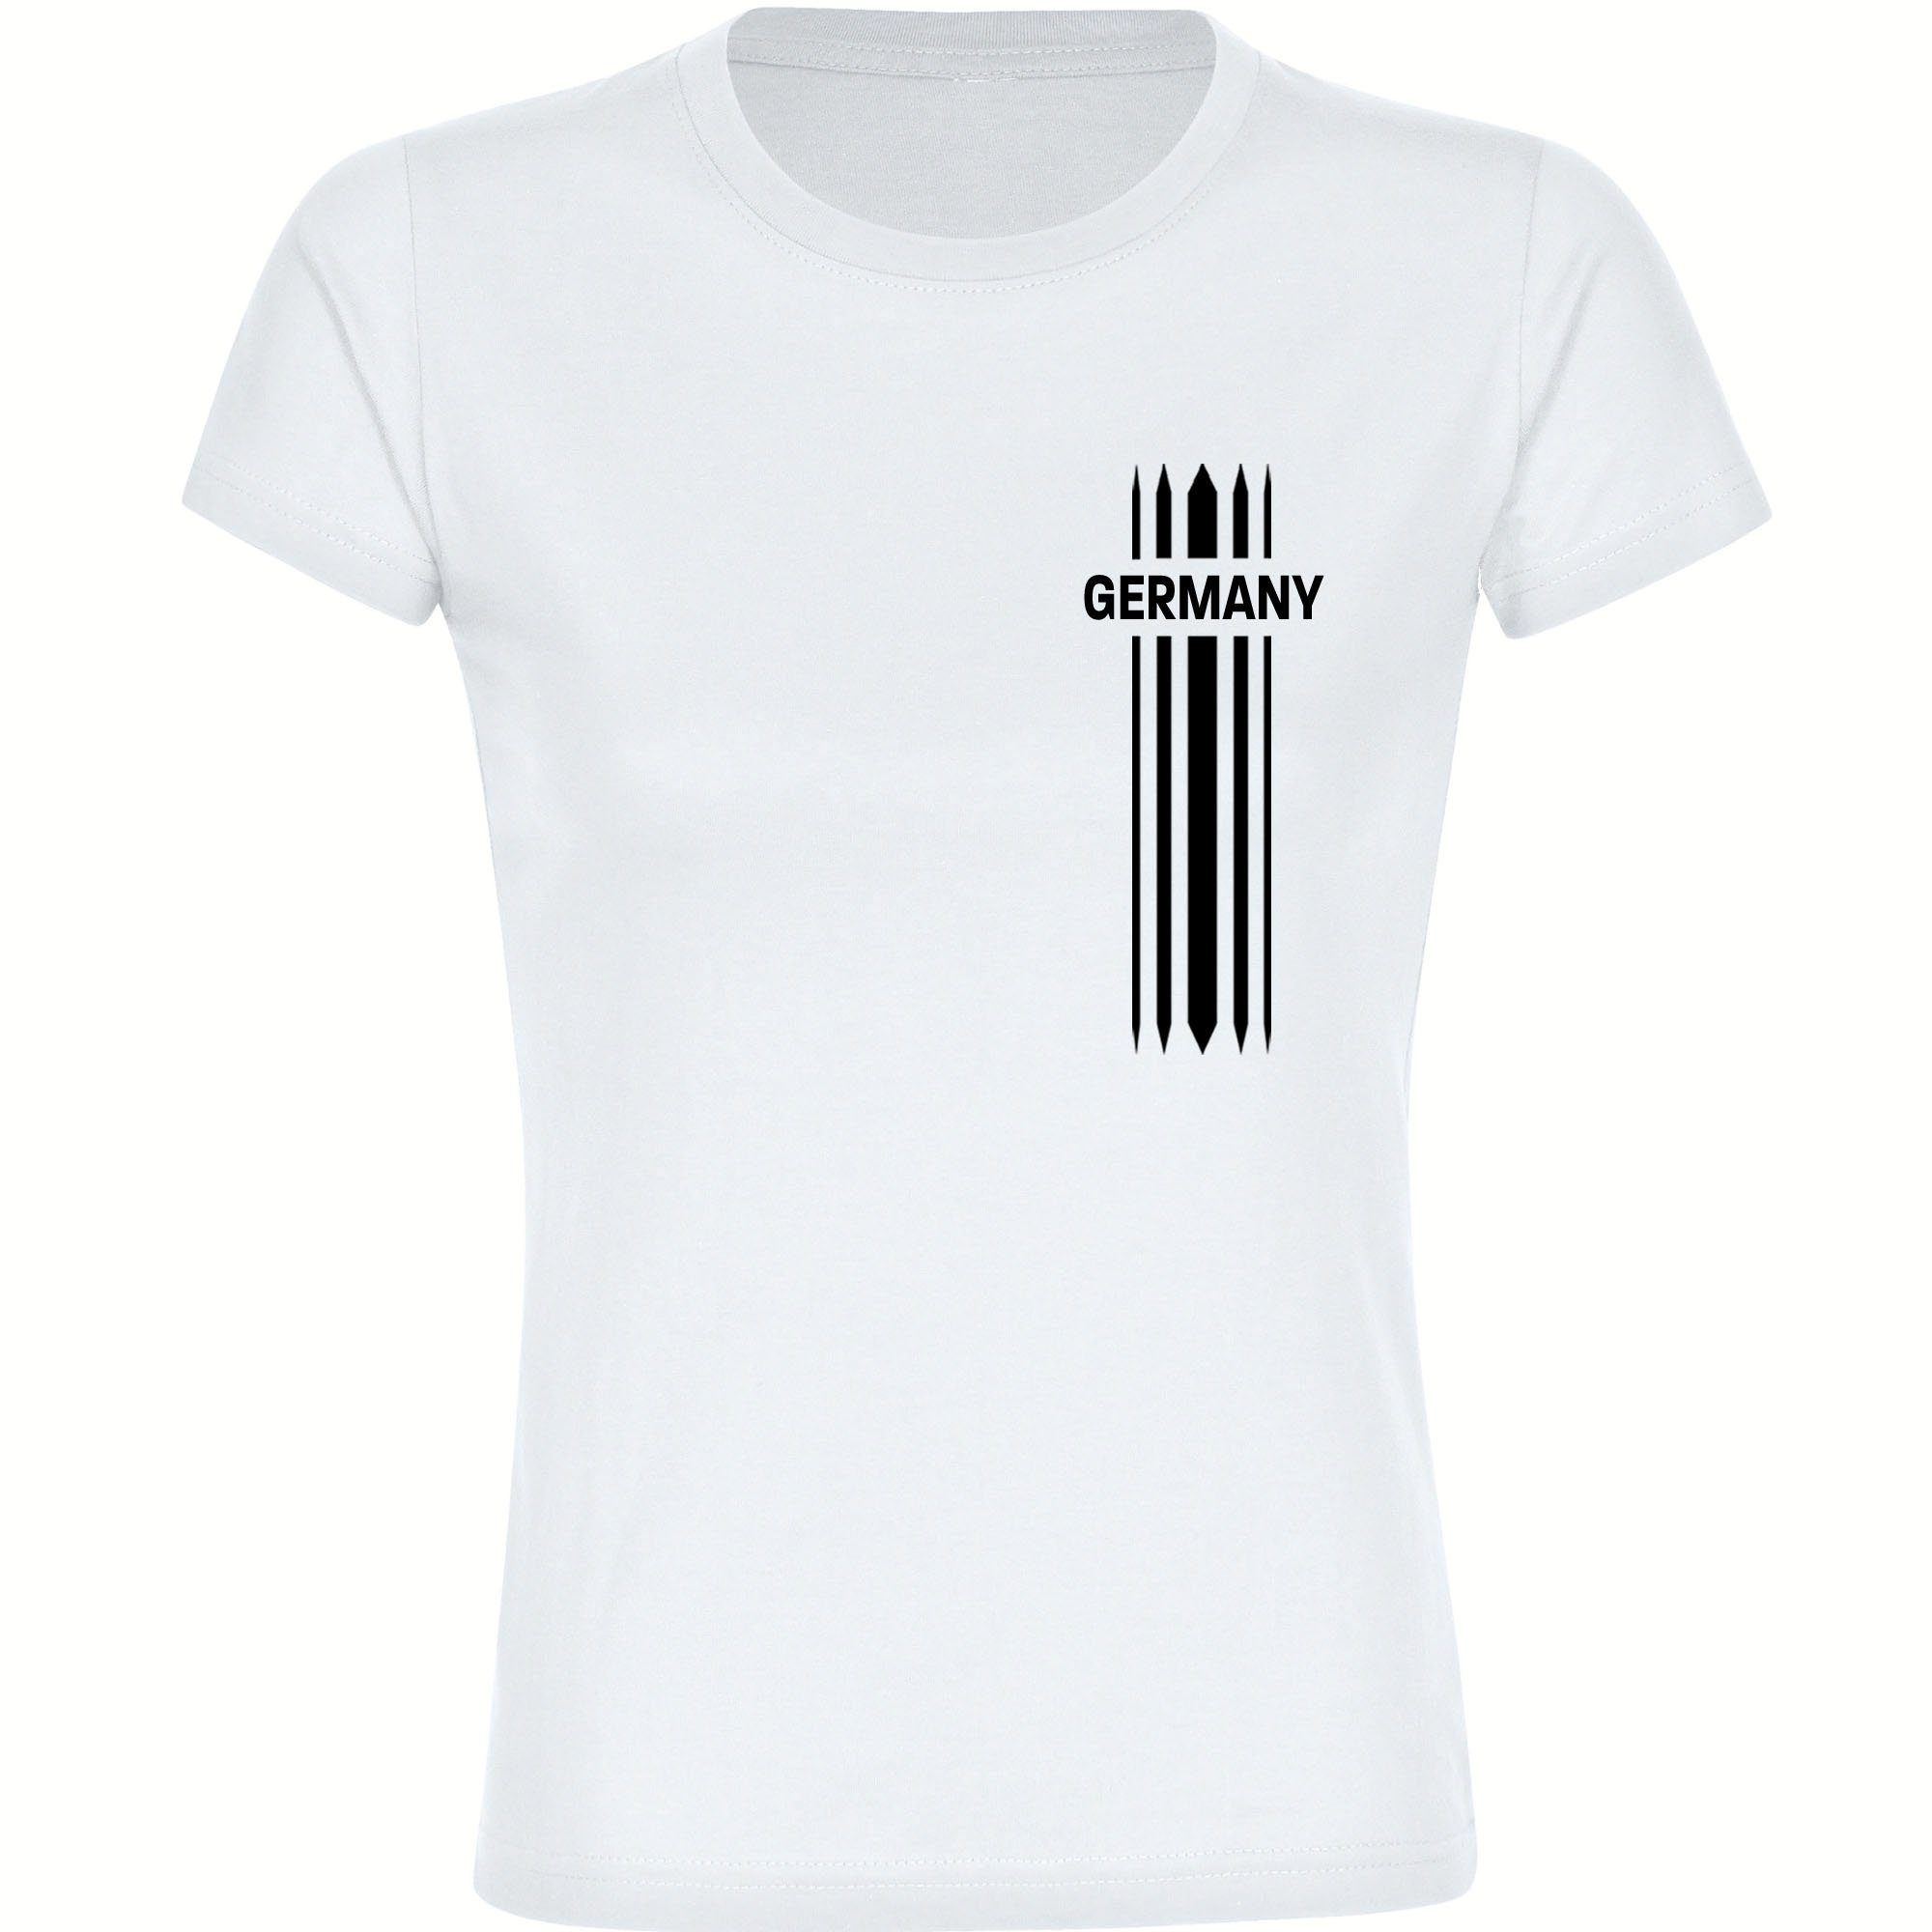 multifanshop T-Shirt Damen Germany - Streifen - Frauen